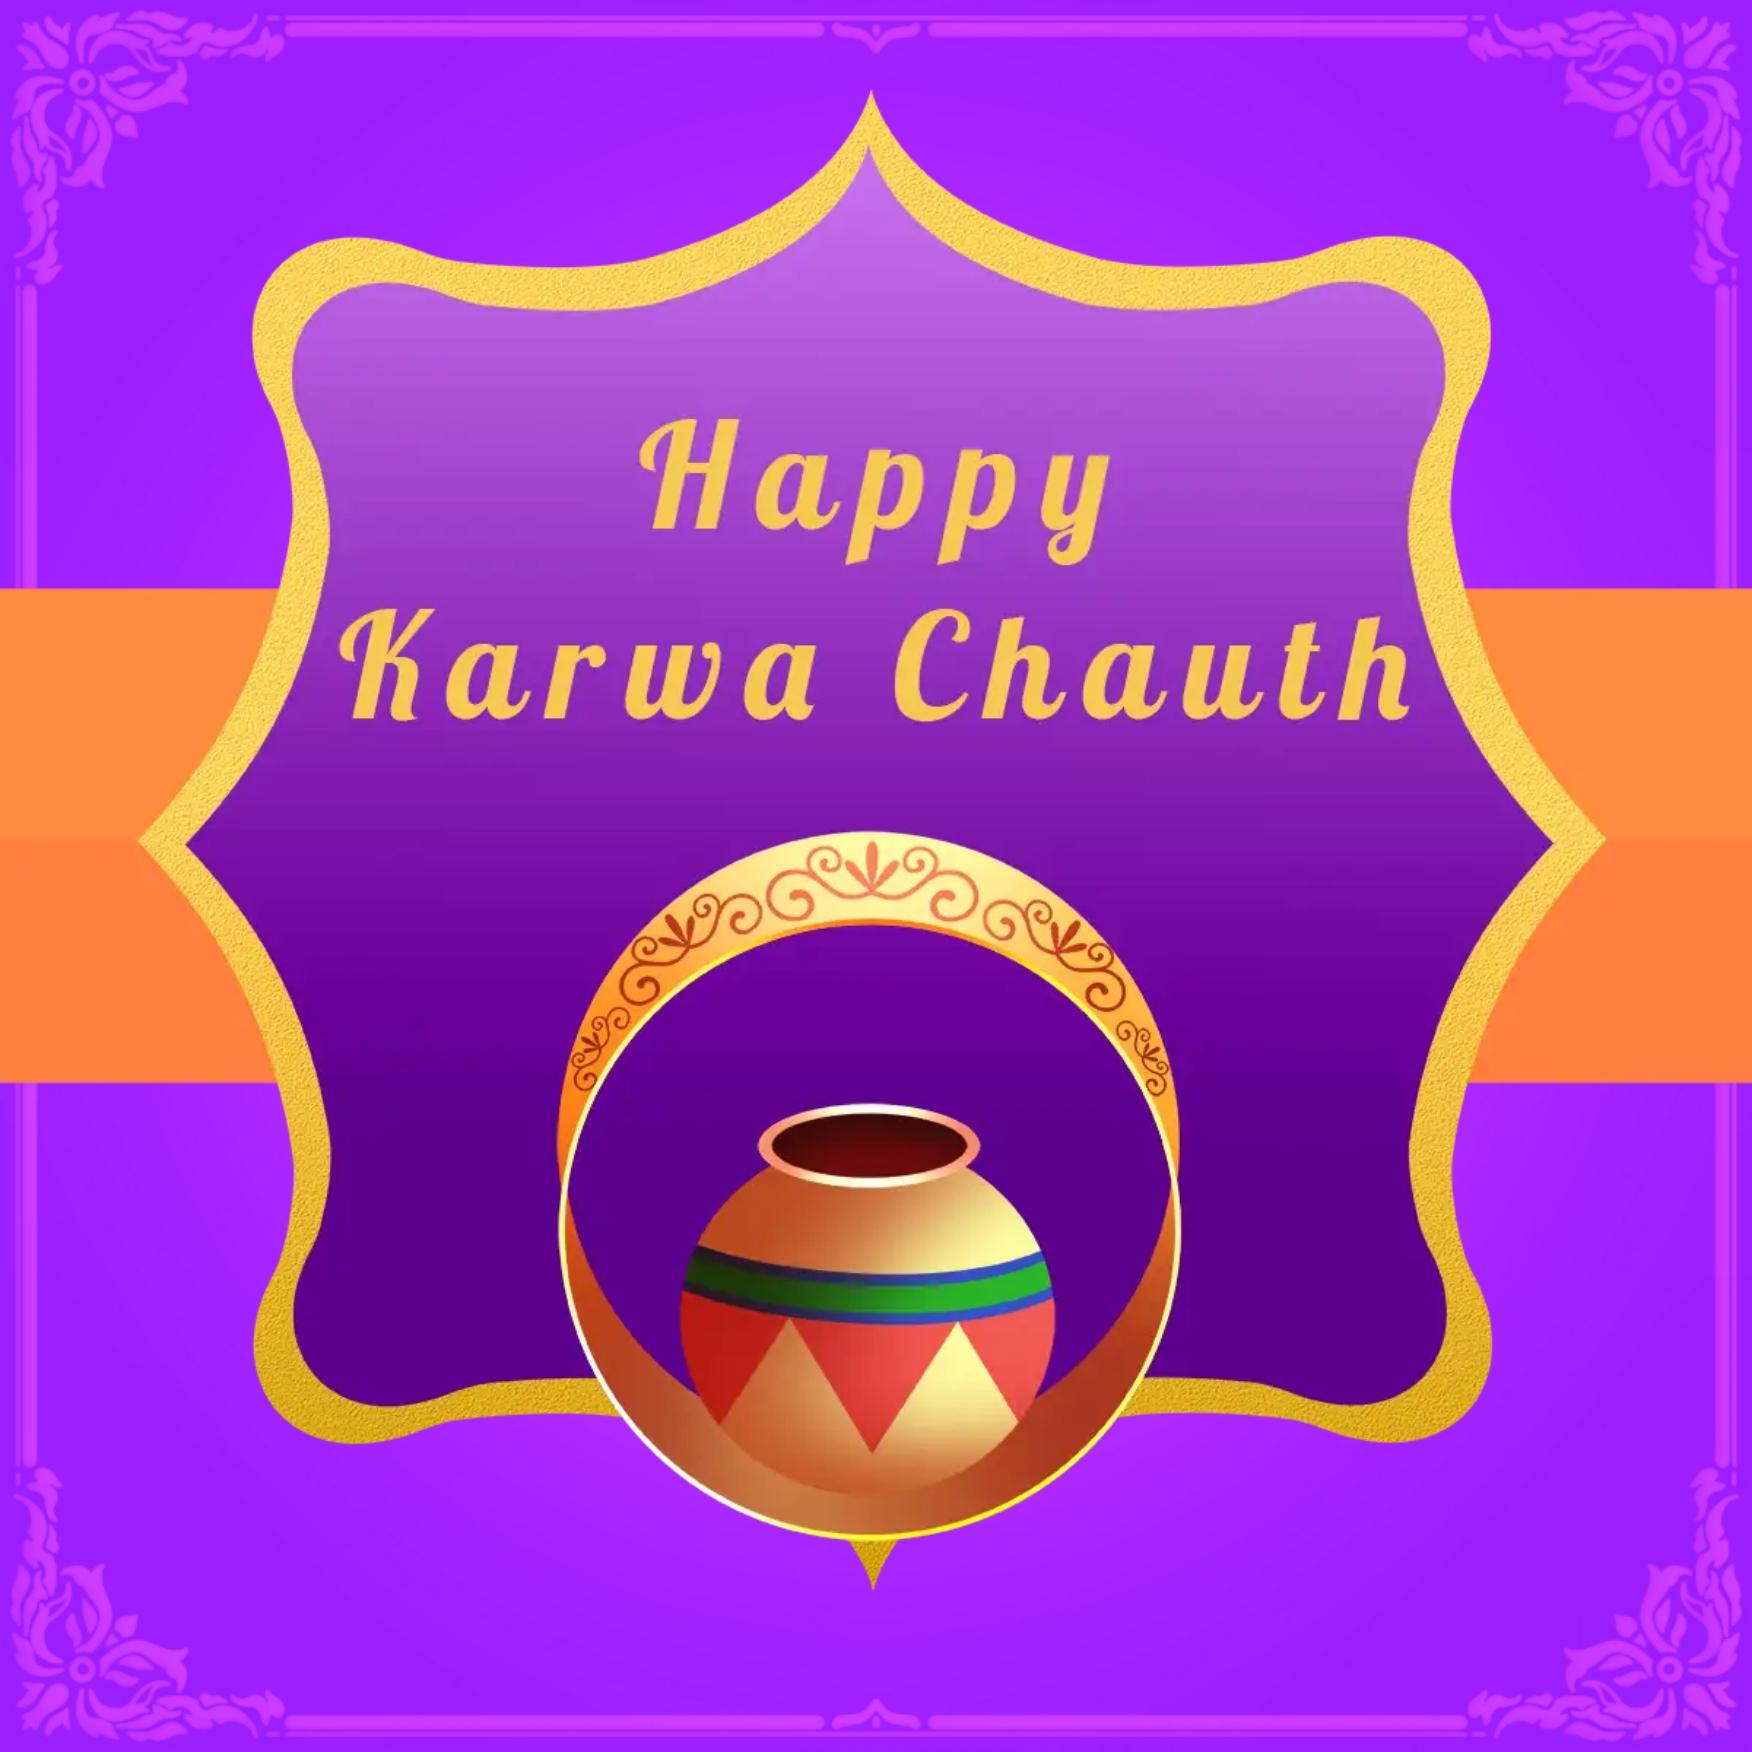 Happy Karwa Chauth Images Hd